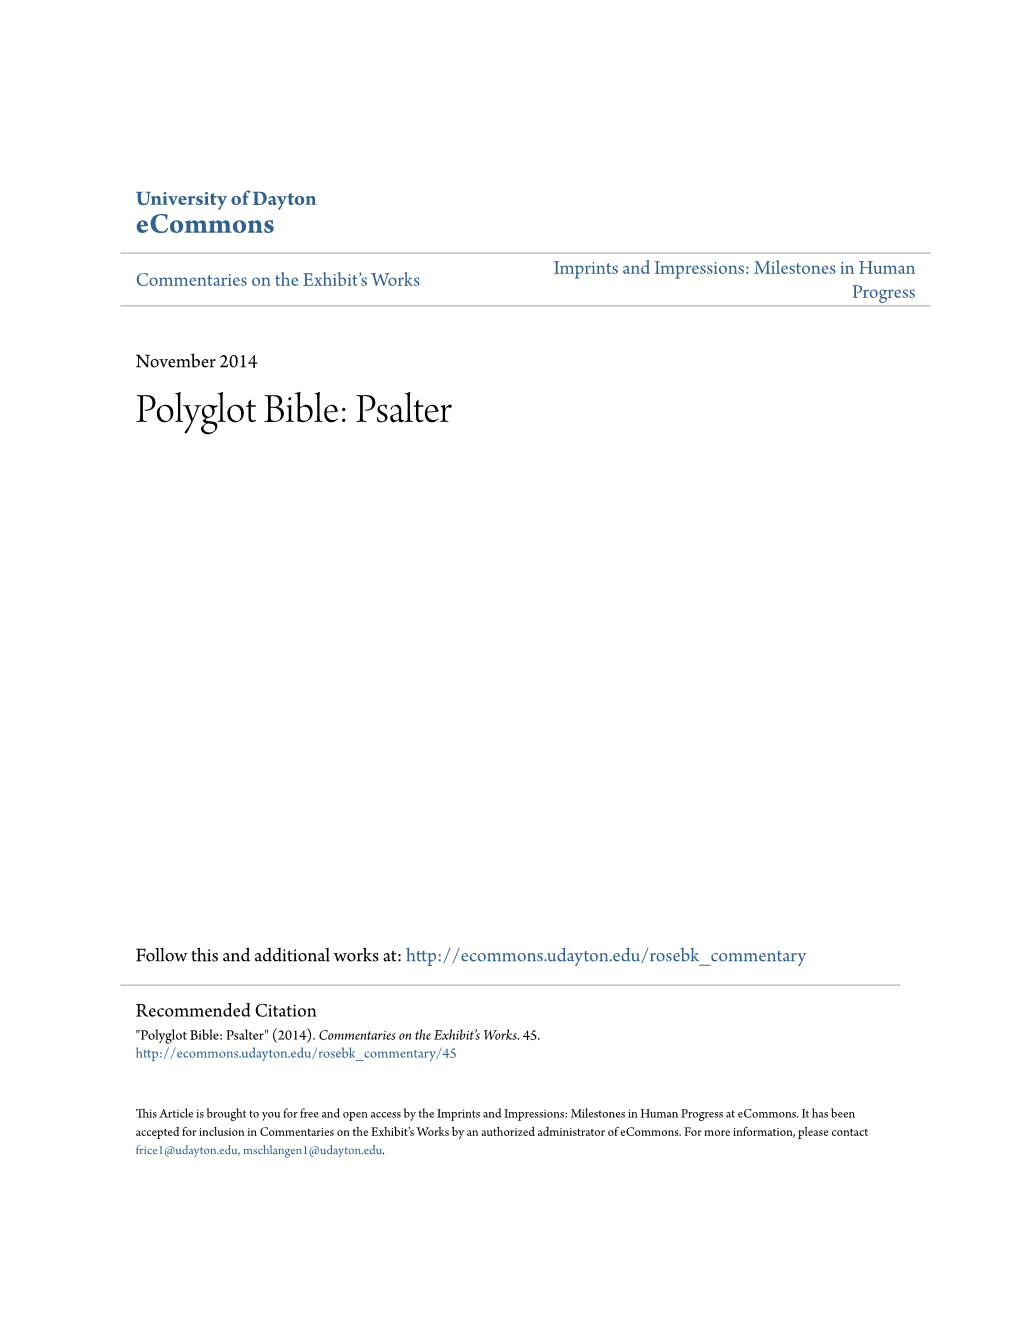 Polyglot Bible: Psalter